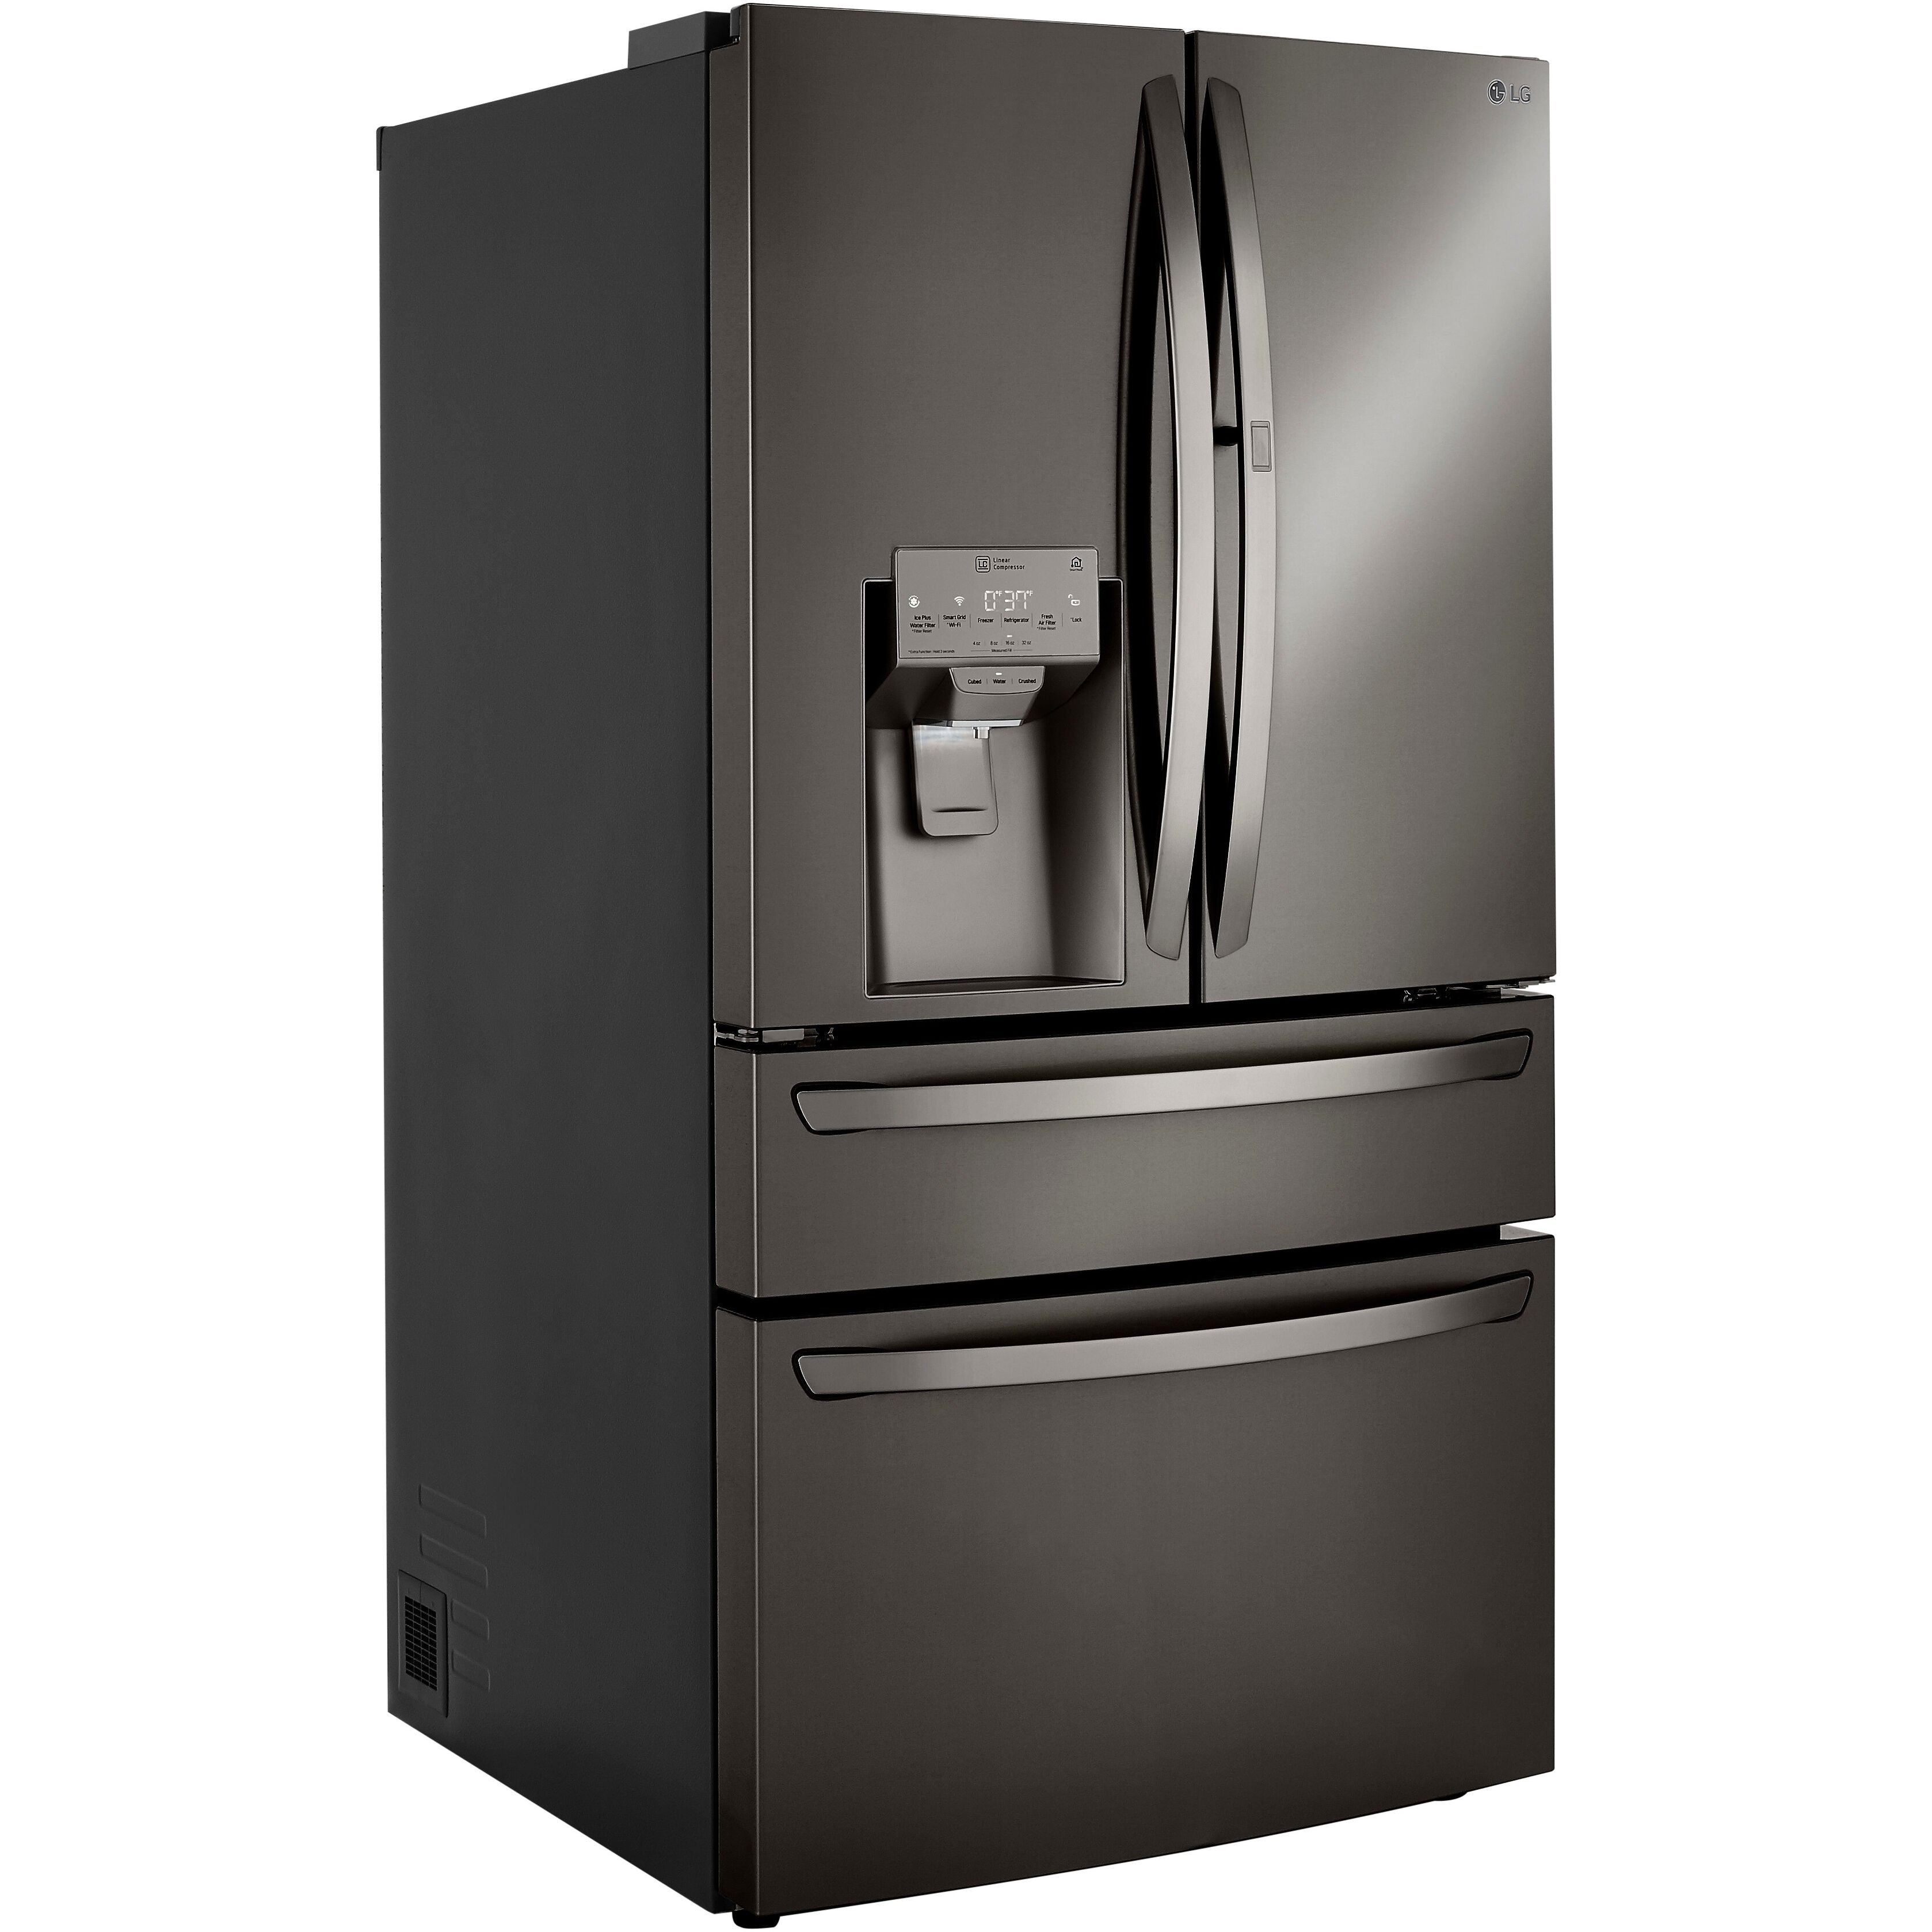 LG 36 Inch 4-Door French Door Refrigerator in Black Stainless Steel 23 Cu. Ft. (LRMDC2306D)